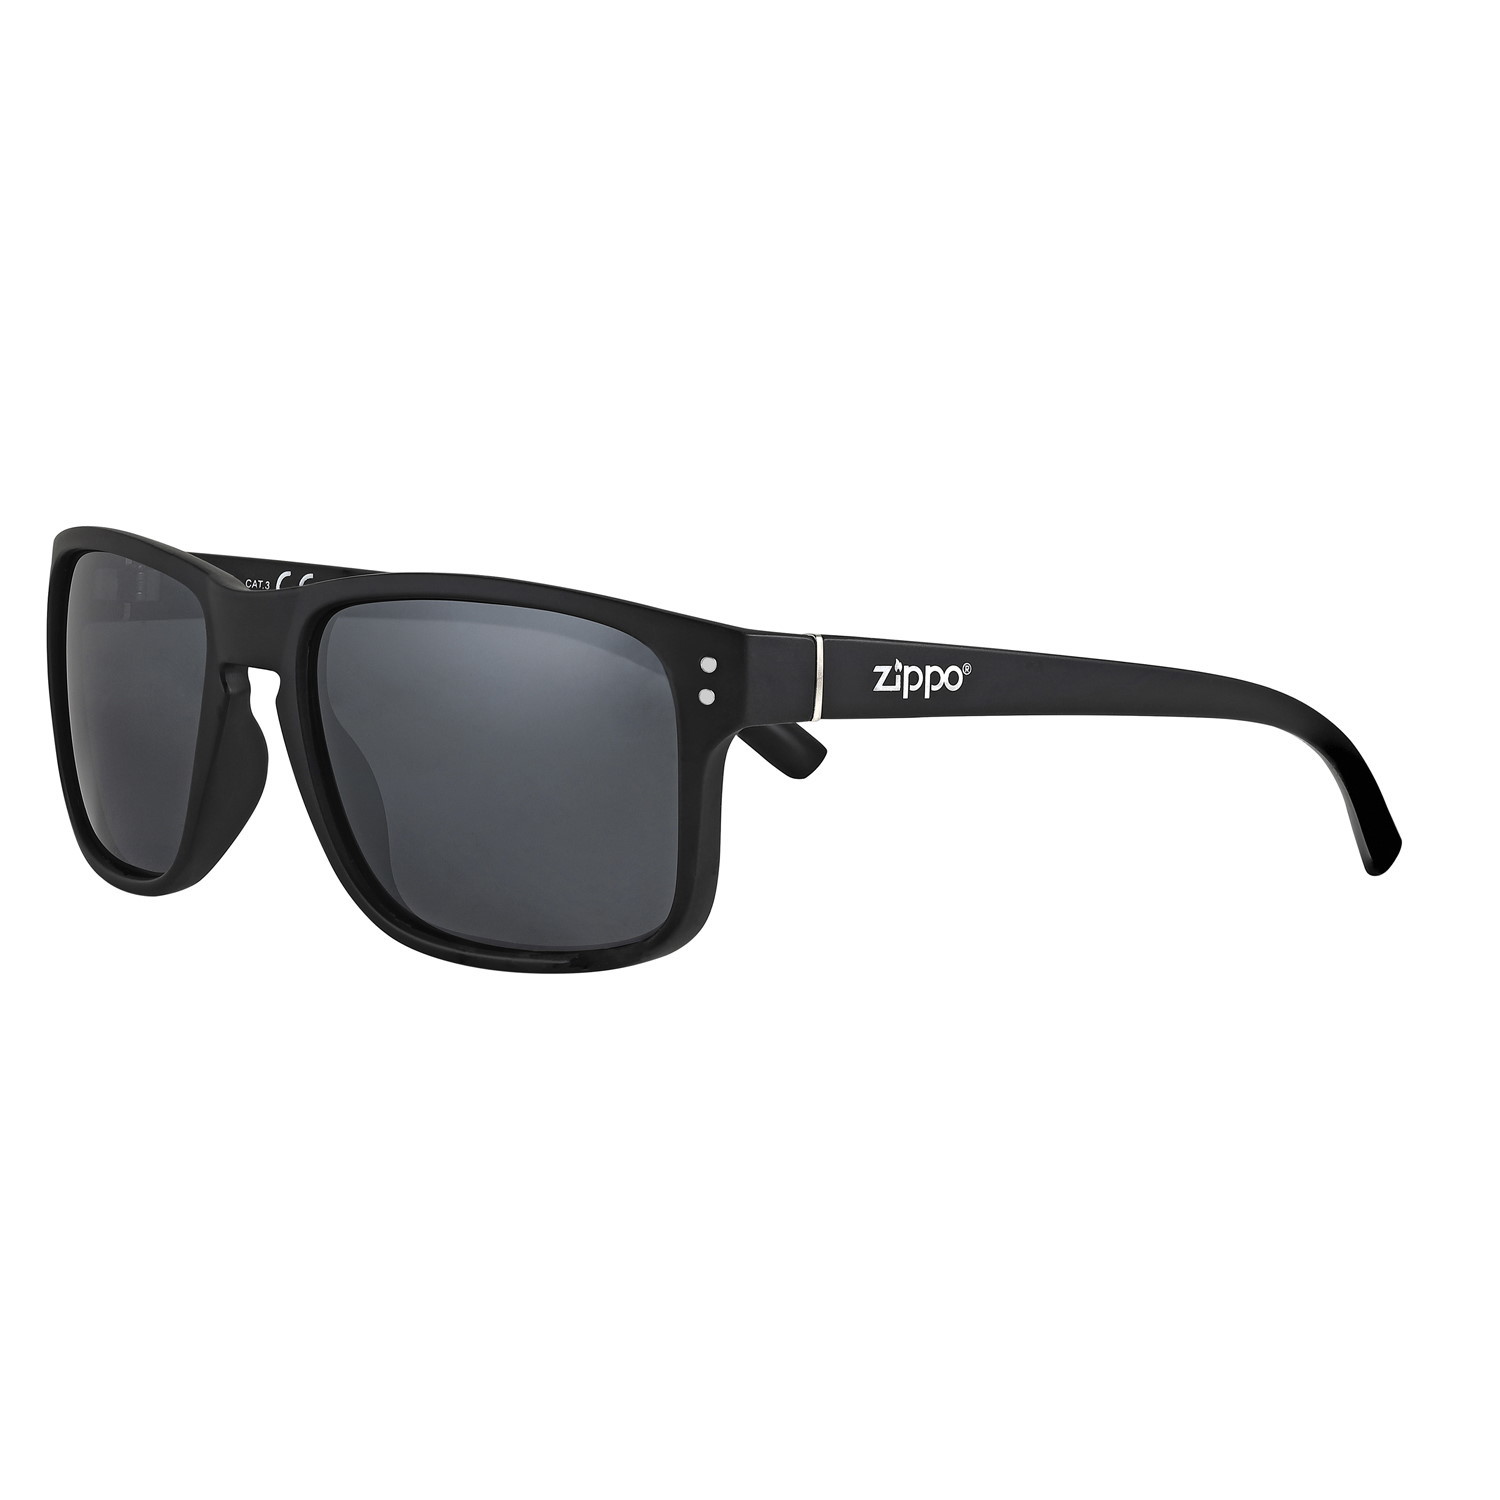 Очки солнцезащитные ZIPPO, чёрные, унисекс, оправа и дужки из поликарбоната, поляризационные линзы, Мужские аксессуары, Солнцезащитные очки